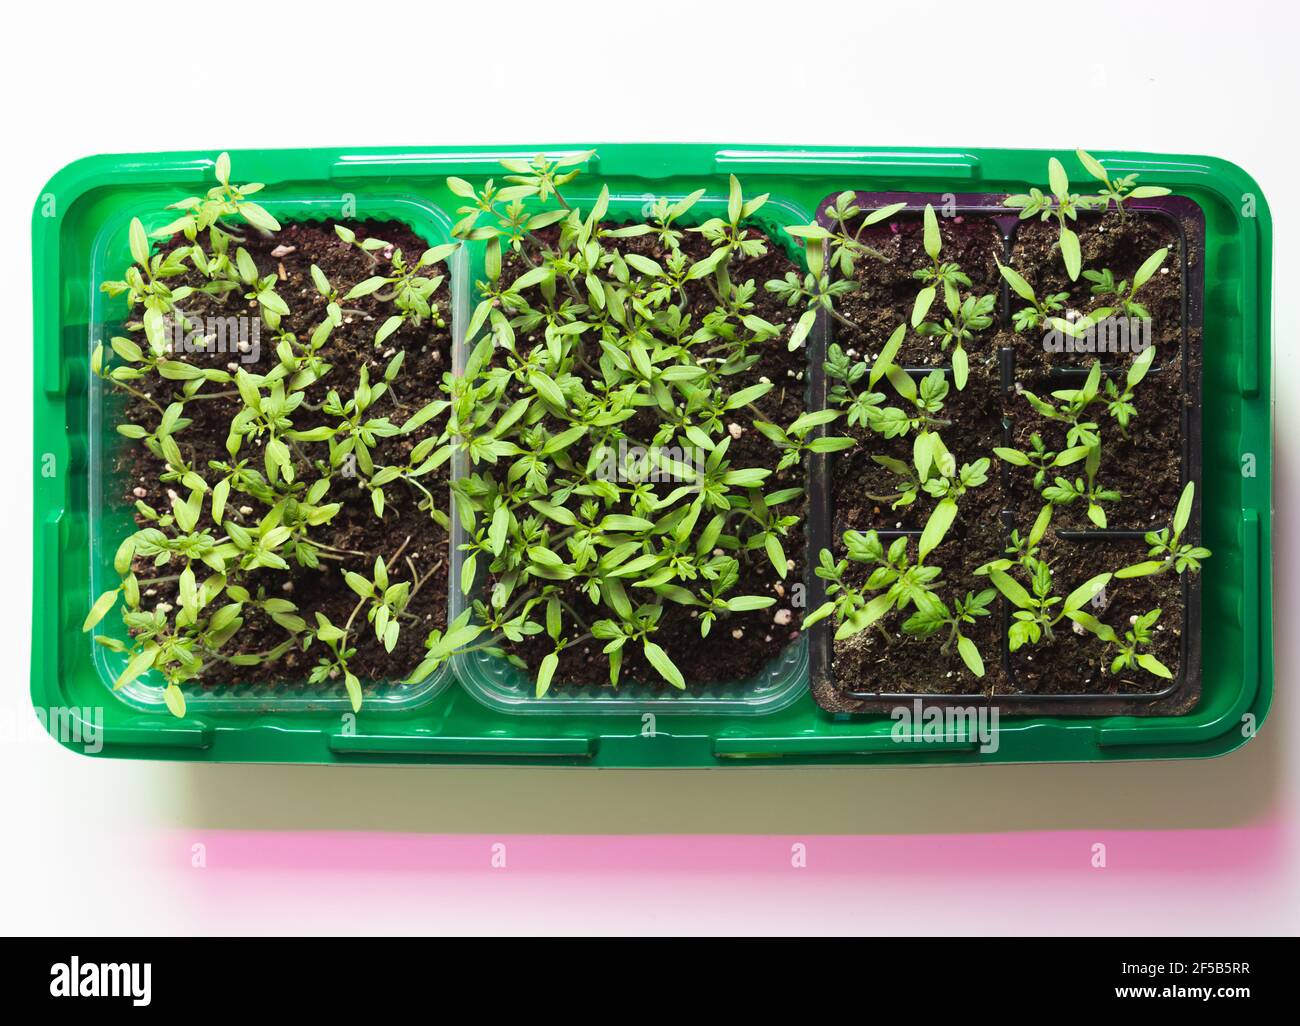 Scatola di plastica verde con piantine di piante in crescita sta sotto l'illuminazione fitofarmacena a spettro completo. Foto vista dall'alto Foto Stock